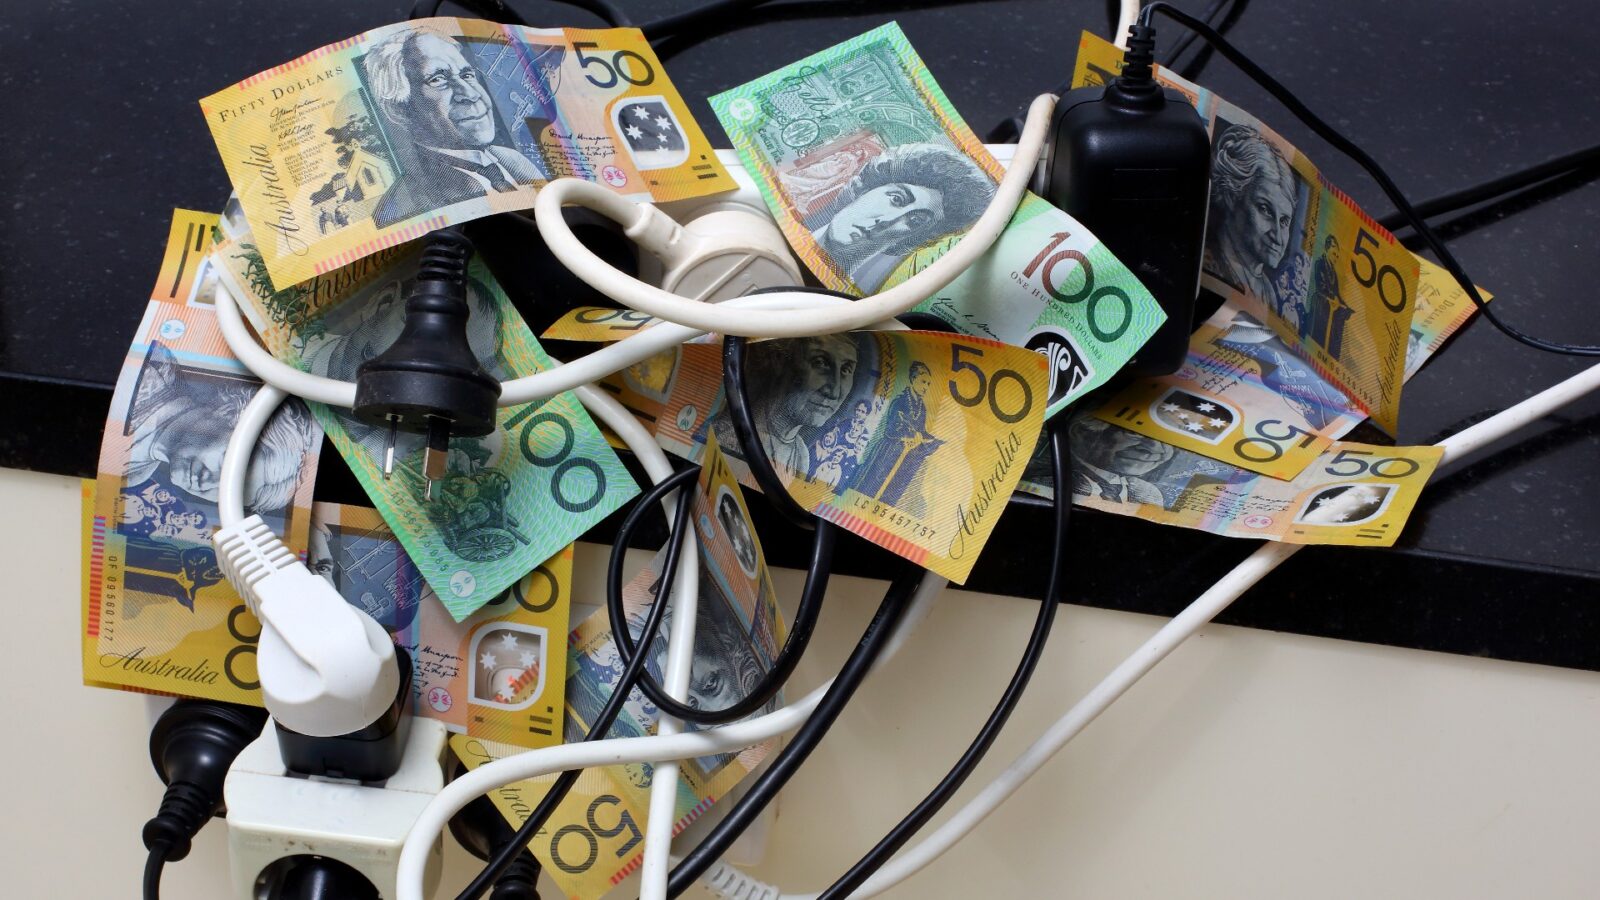 giá điện tăng ở Úc